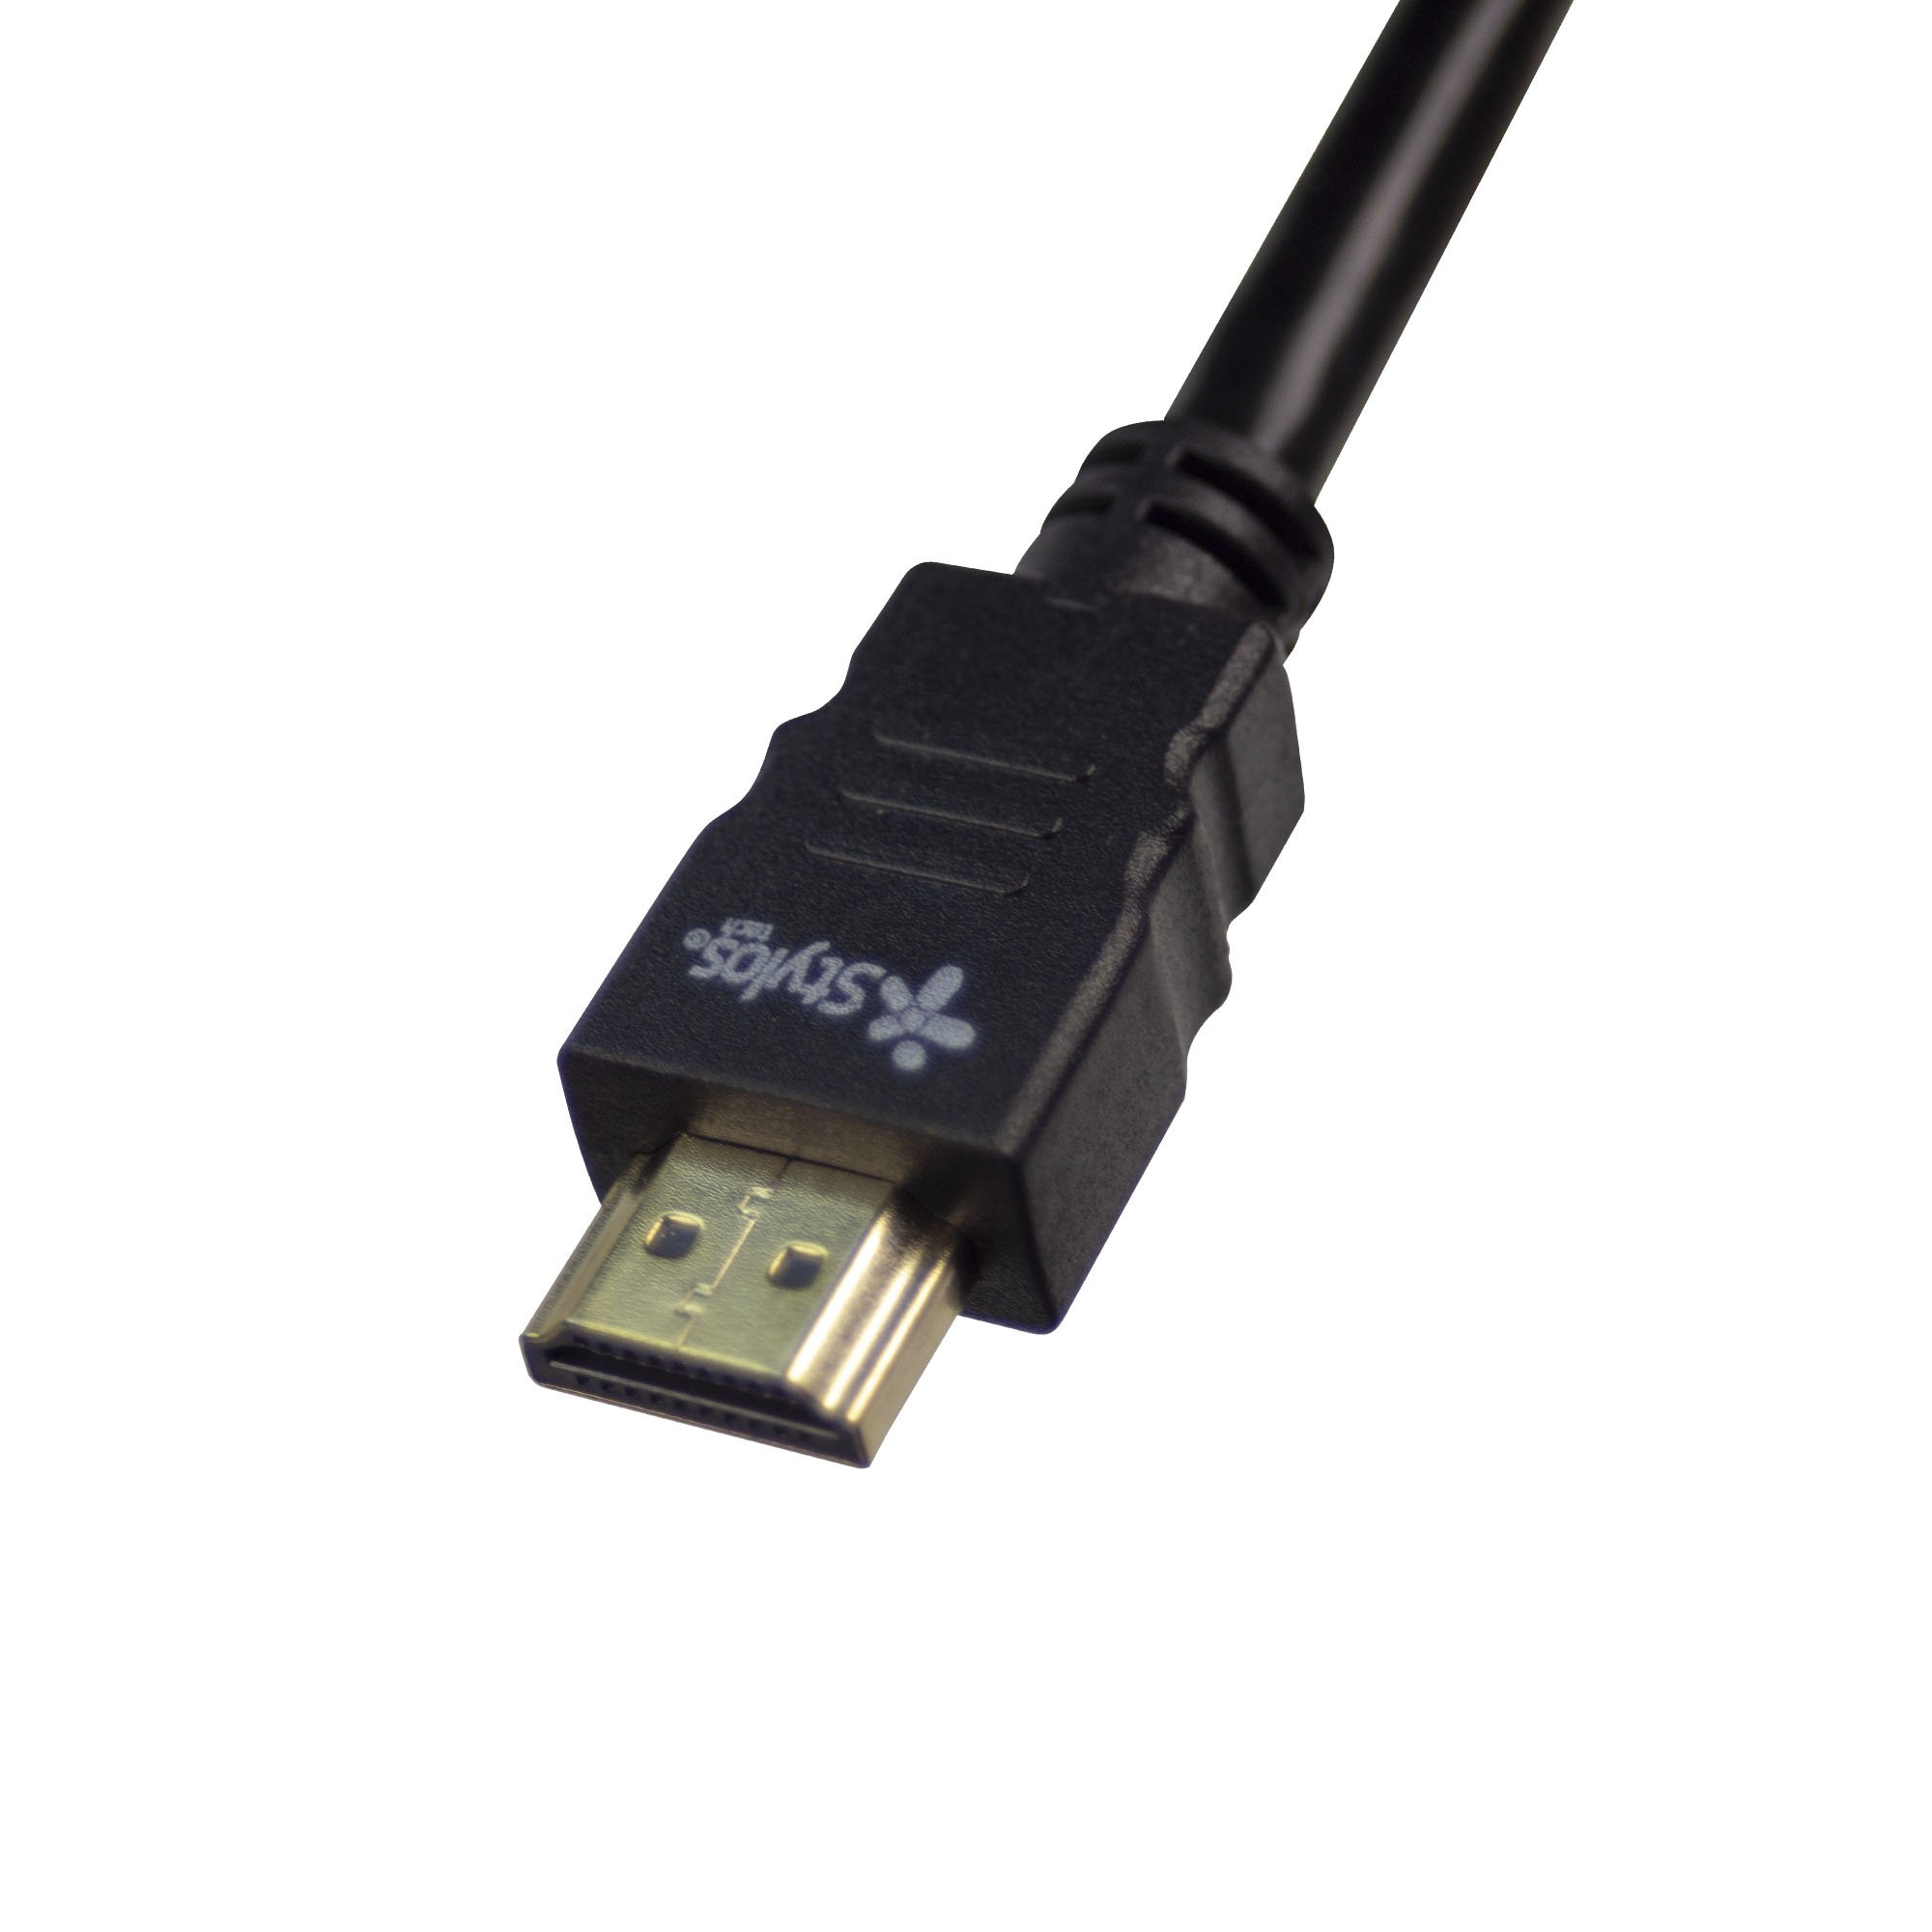 Cable HDMI 1.4V  Stylos STACHD3B - 2 m